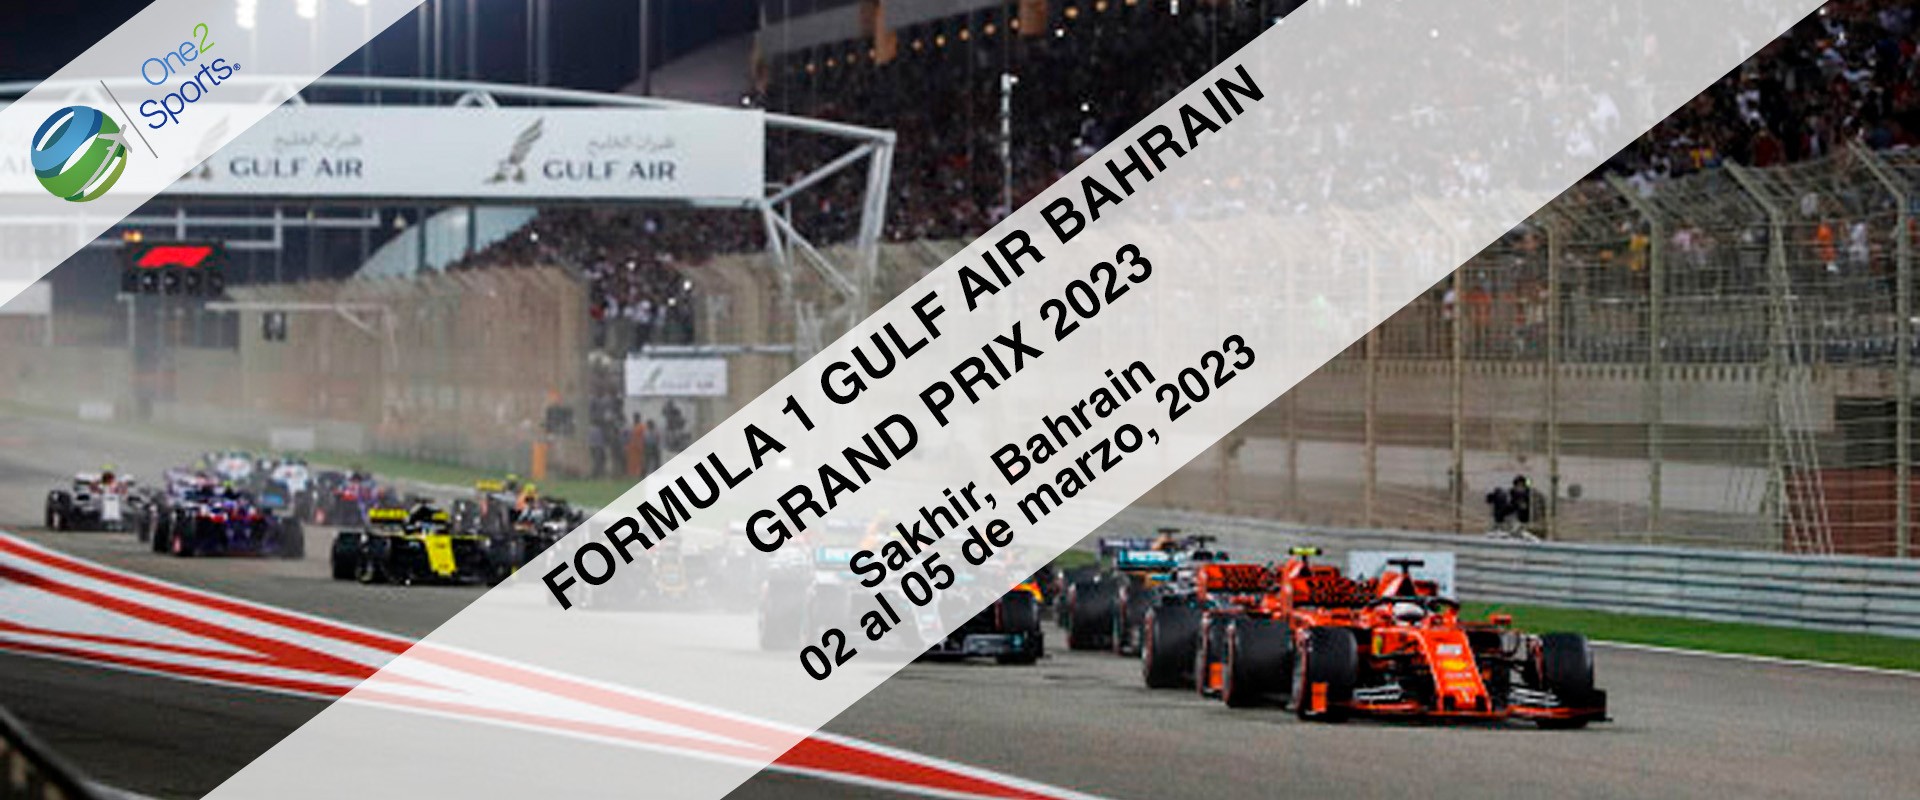 F1 Gran Premio Bahrein 